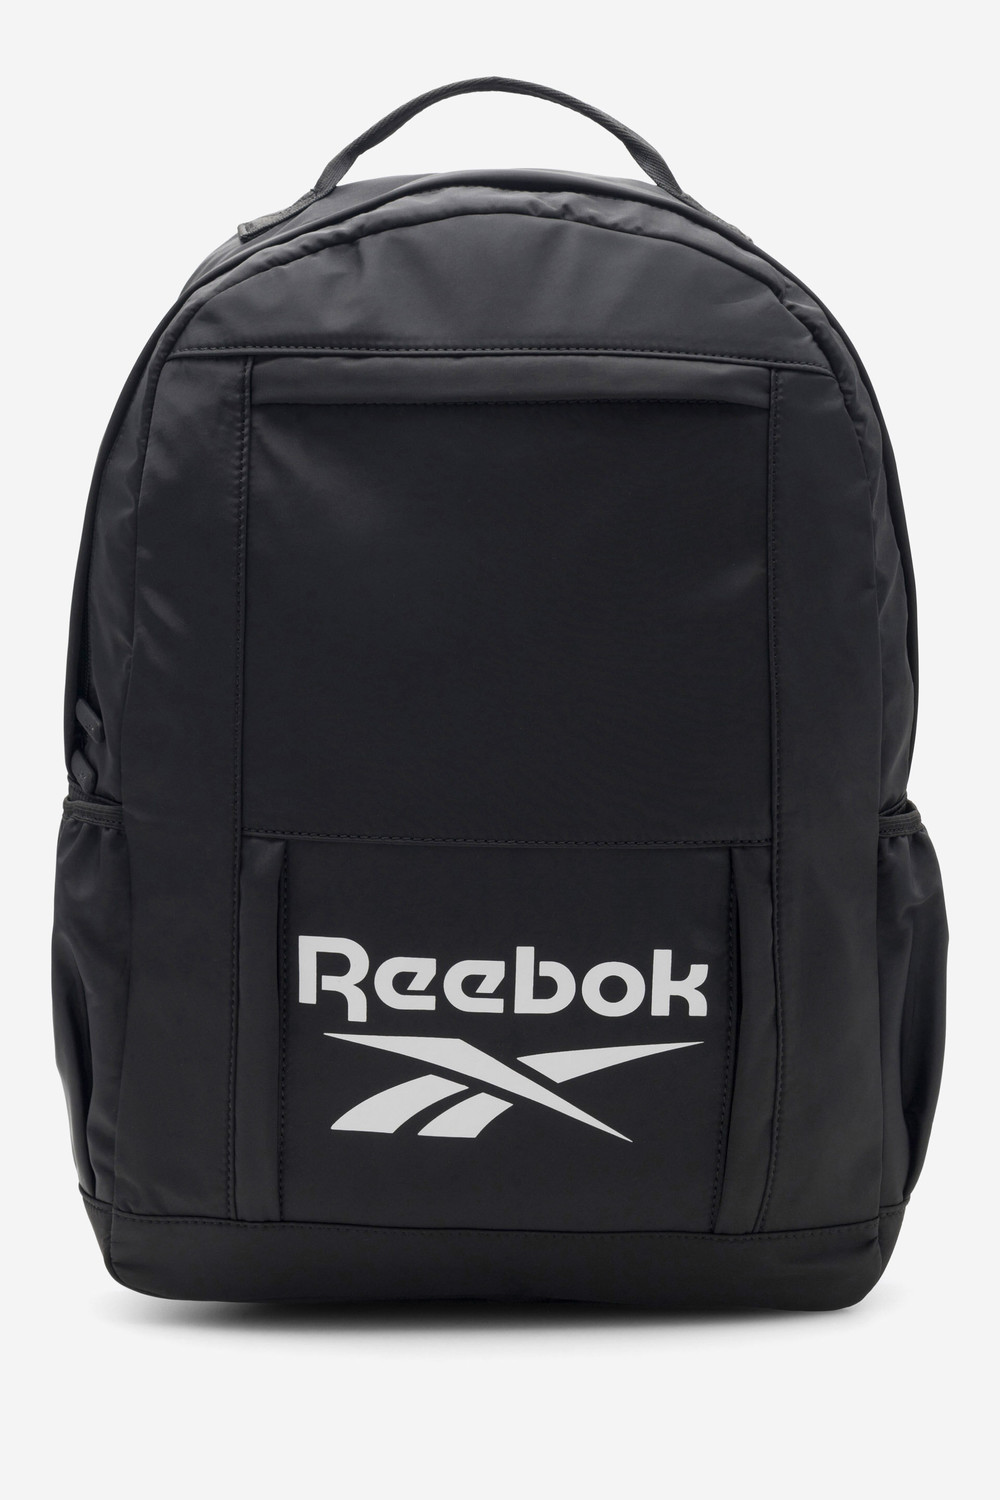 Batohy a tašky Reebok RBK-P-025-CCC